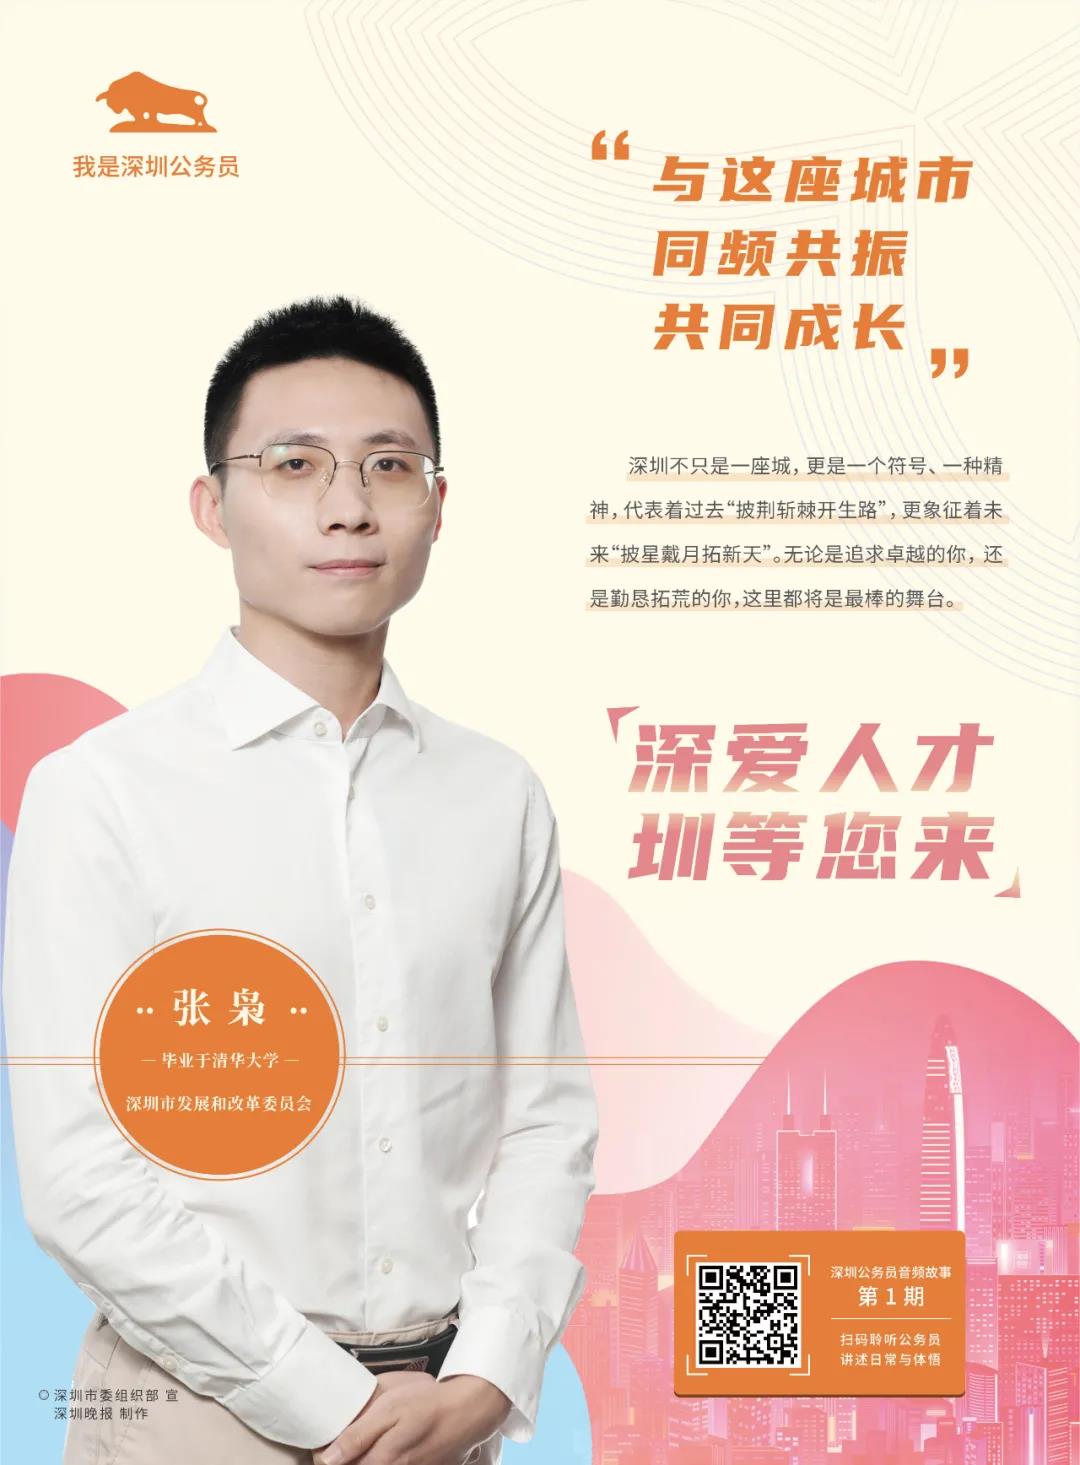 “我是深圳公务员”栏目有声故事发布